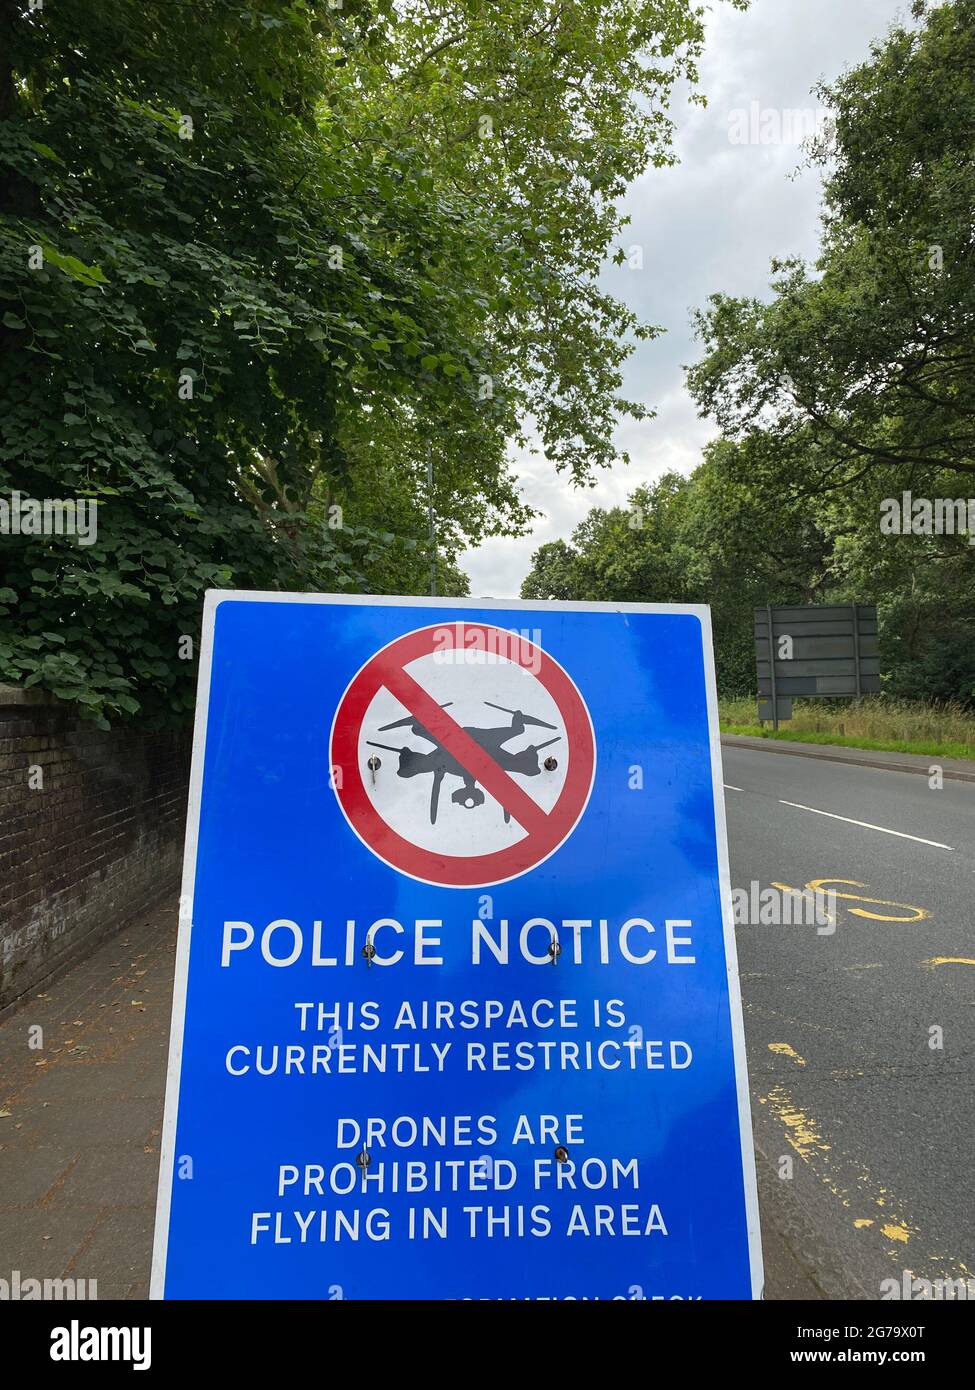 Un cartel policial cerca de Wimbledon, en el suroeste de Londres, advierte a los pilotos de aviones no tripulados que el espacio aéreo está restringido y que el vuelo de aviones no tripulados está prohibido. Fecha de la foto: Domingo 11 de julio de 2021. Foto de stock